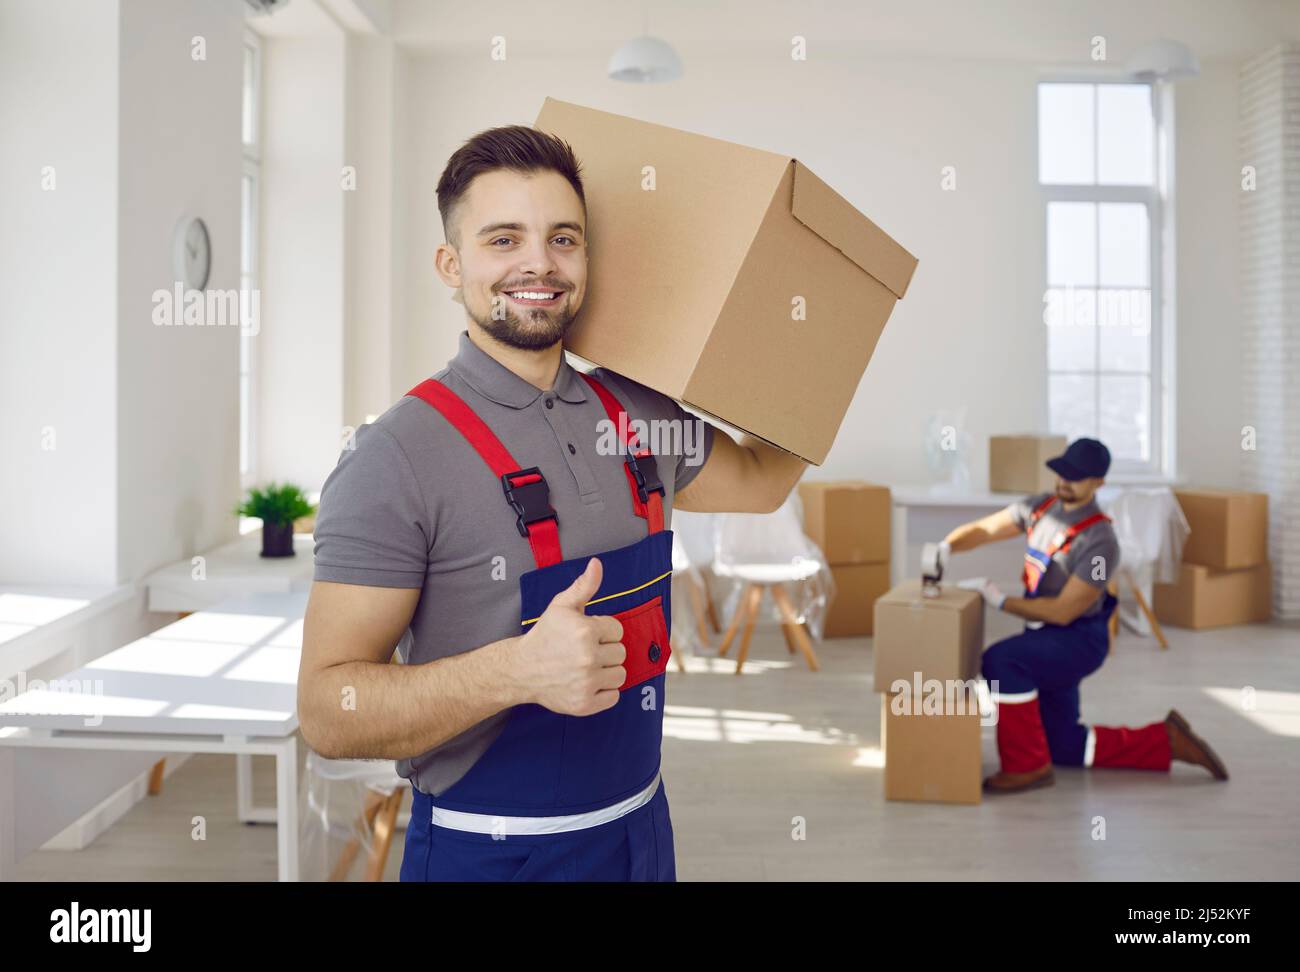 Lächelnder männlicher Arbeiter des Umzugsunternehmens und des Zustellers, der einen Karton mit Daumen nach oben hält. Stockfoto